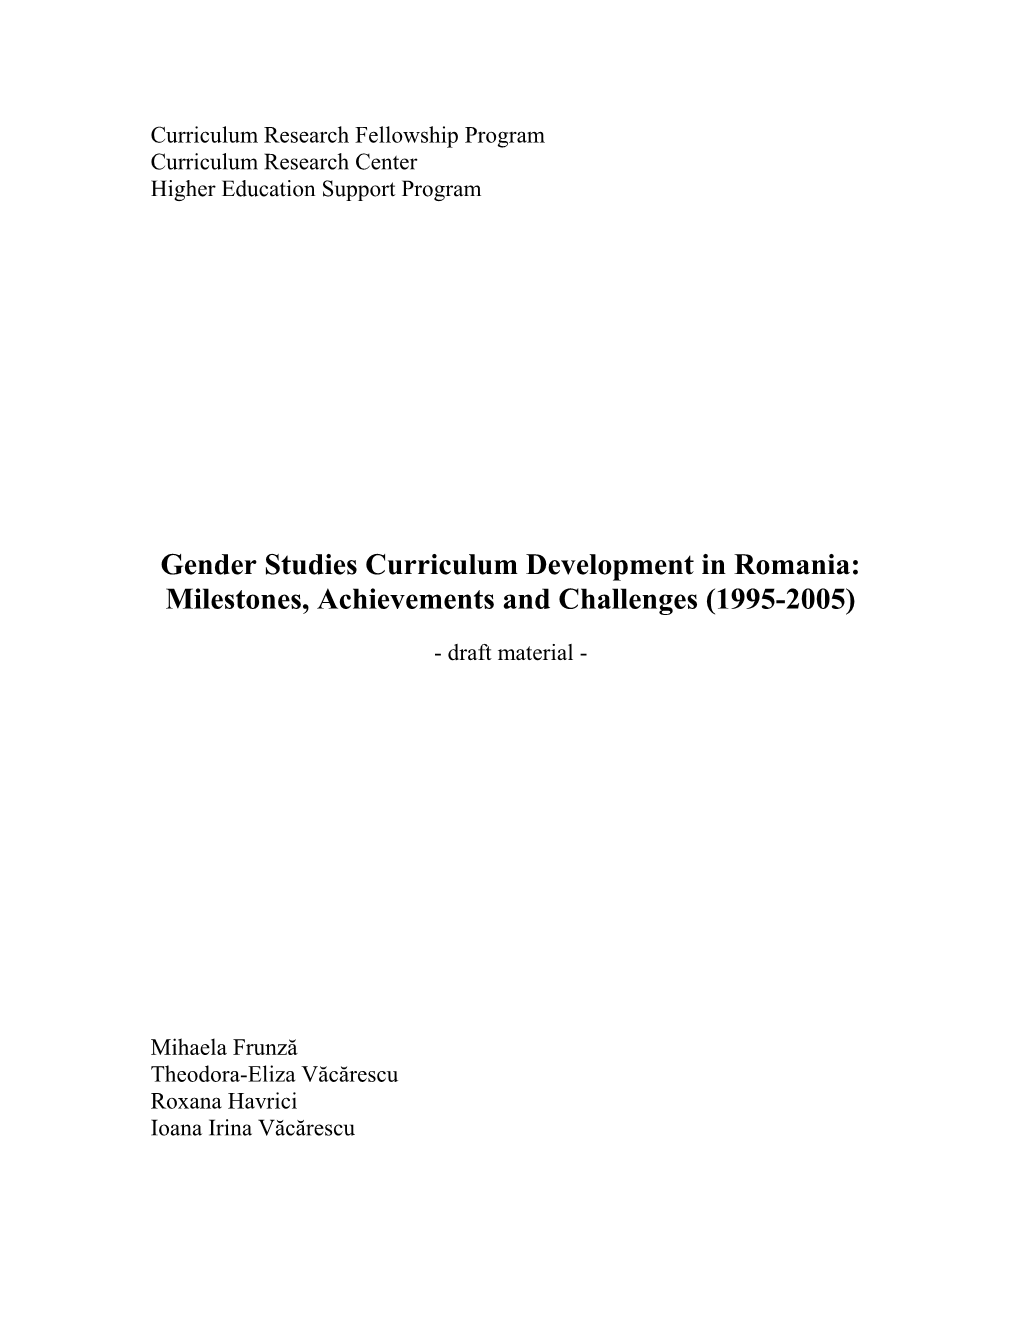 Gender Studies Curriculum Development in Romania